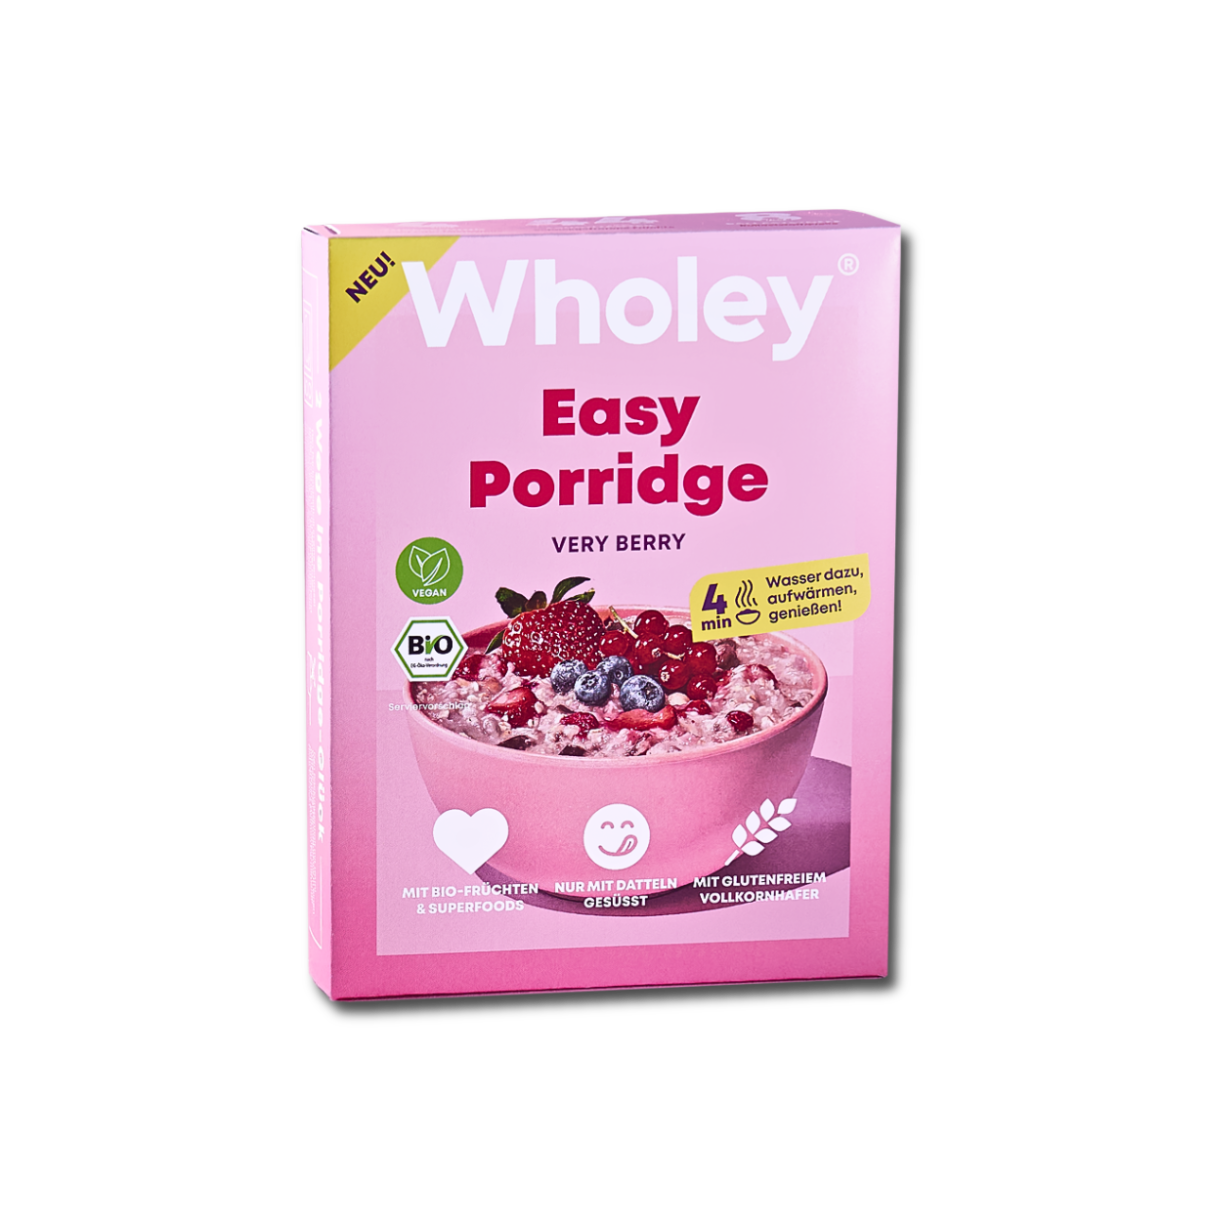 Very Berry Porridge